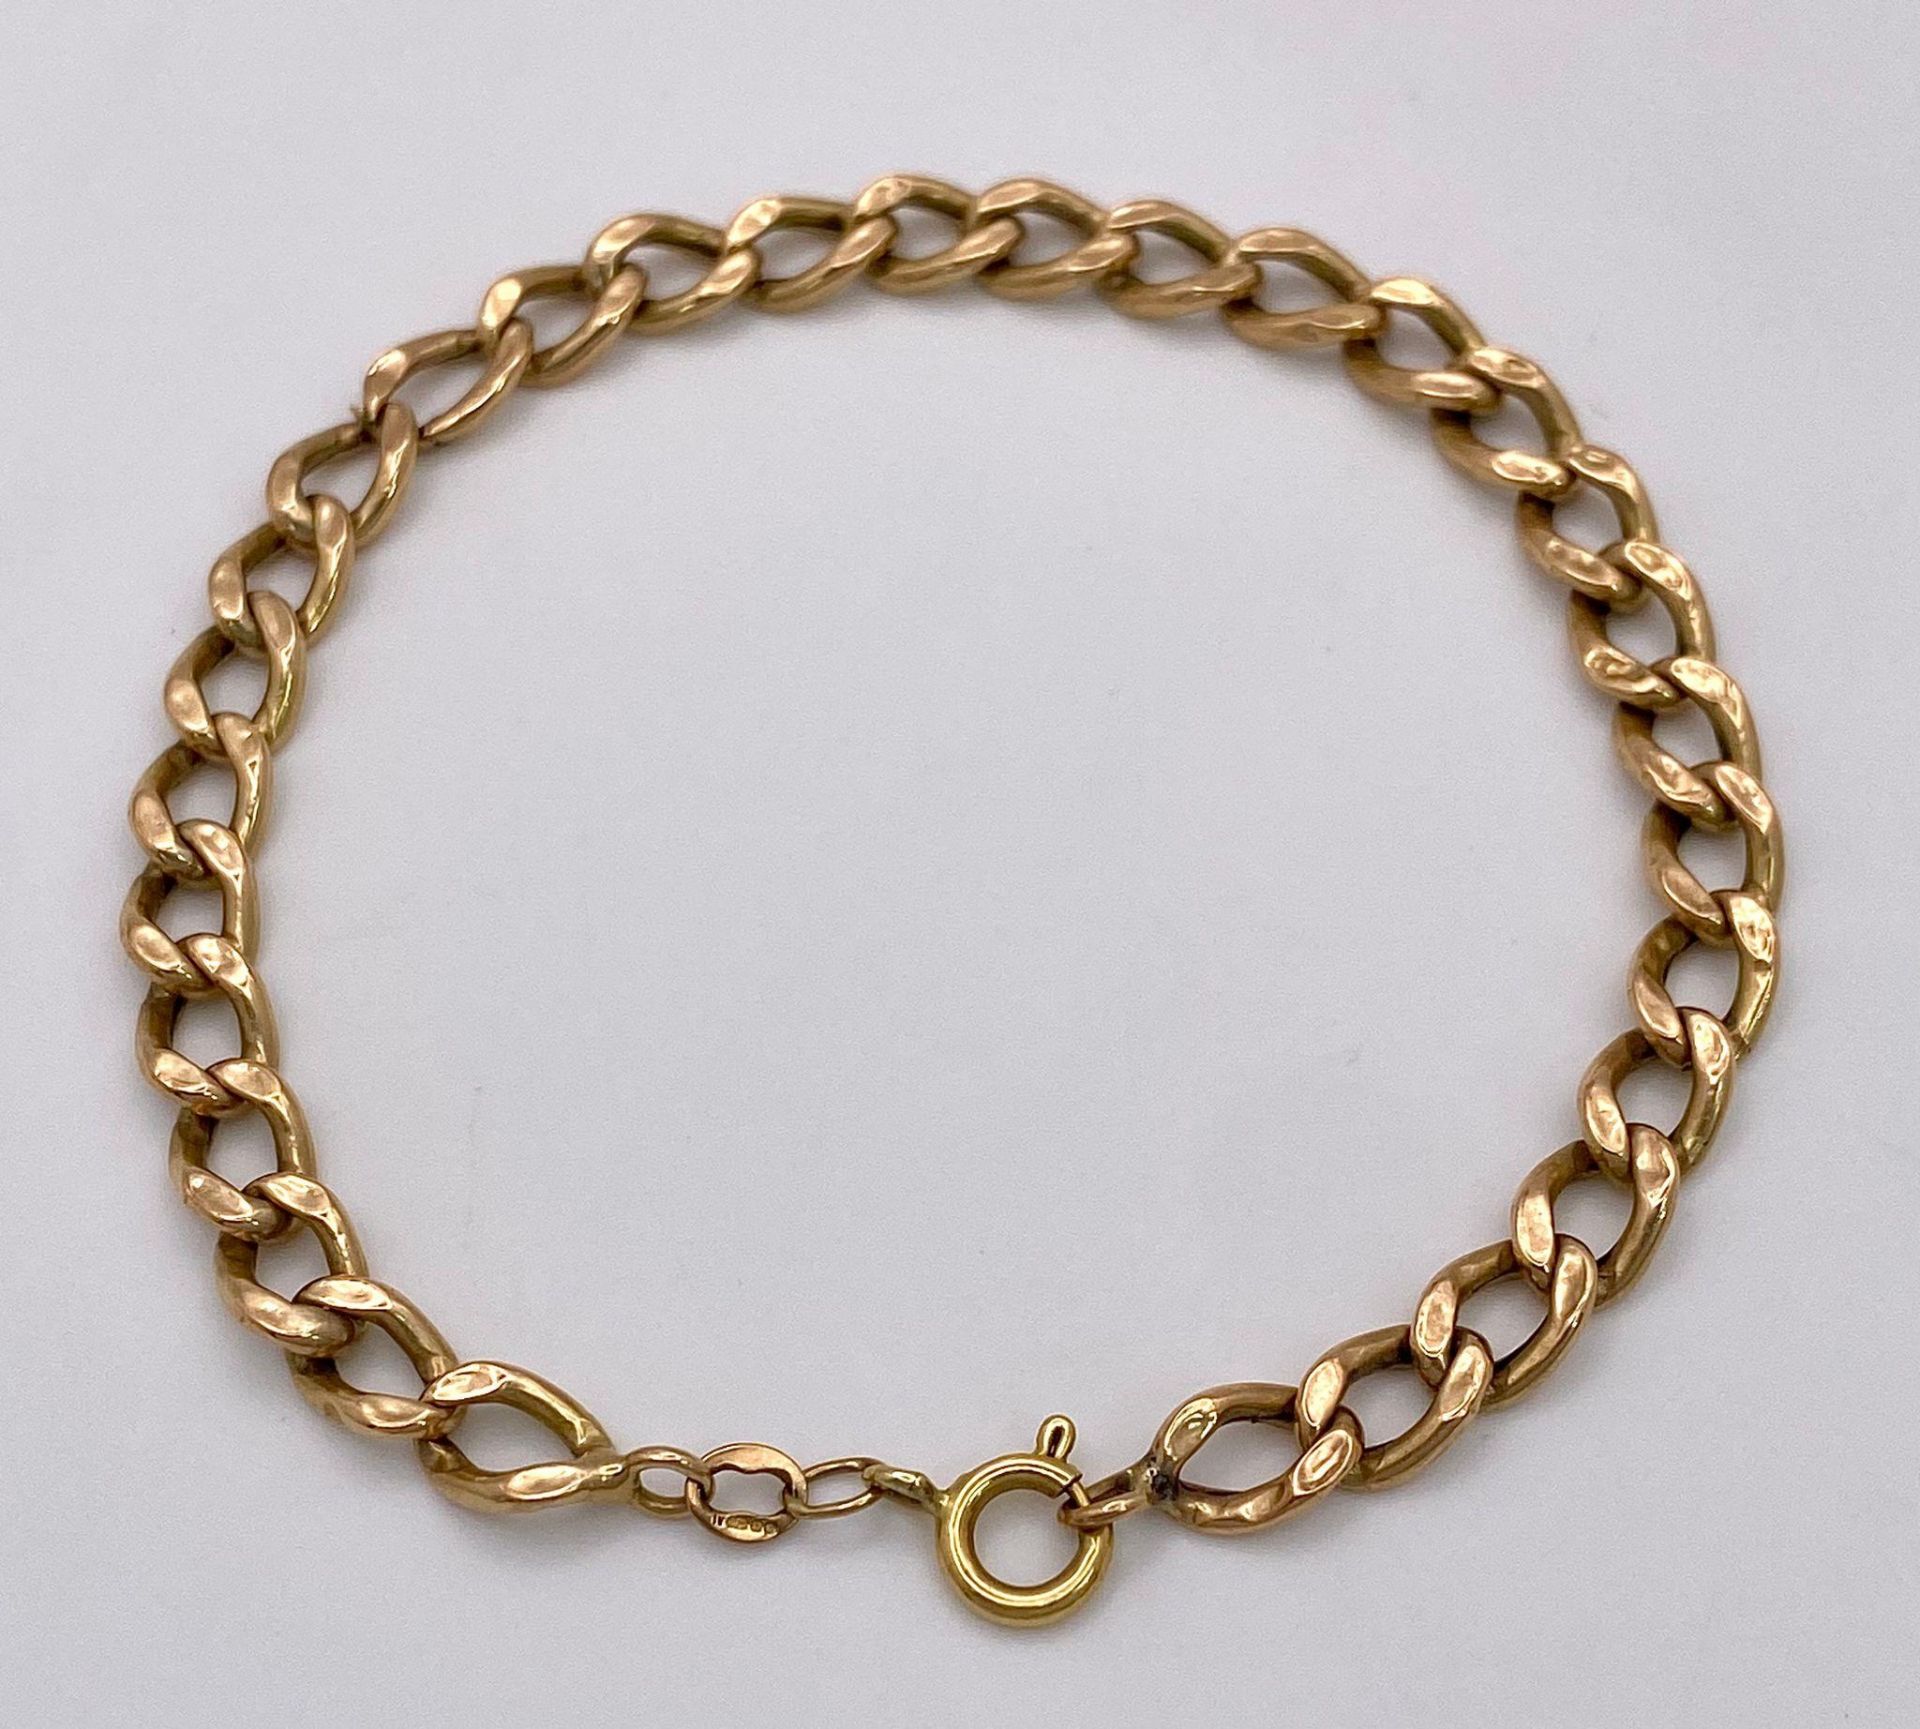 An 18K Yellow Gold Flat Curb Link Bracelet. 19cm. 4.25g weight. - Bild 4 aus 6